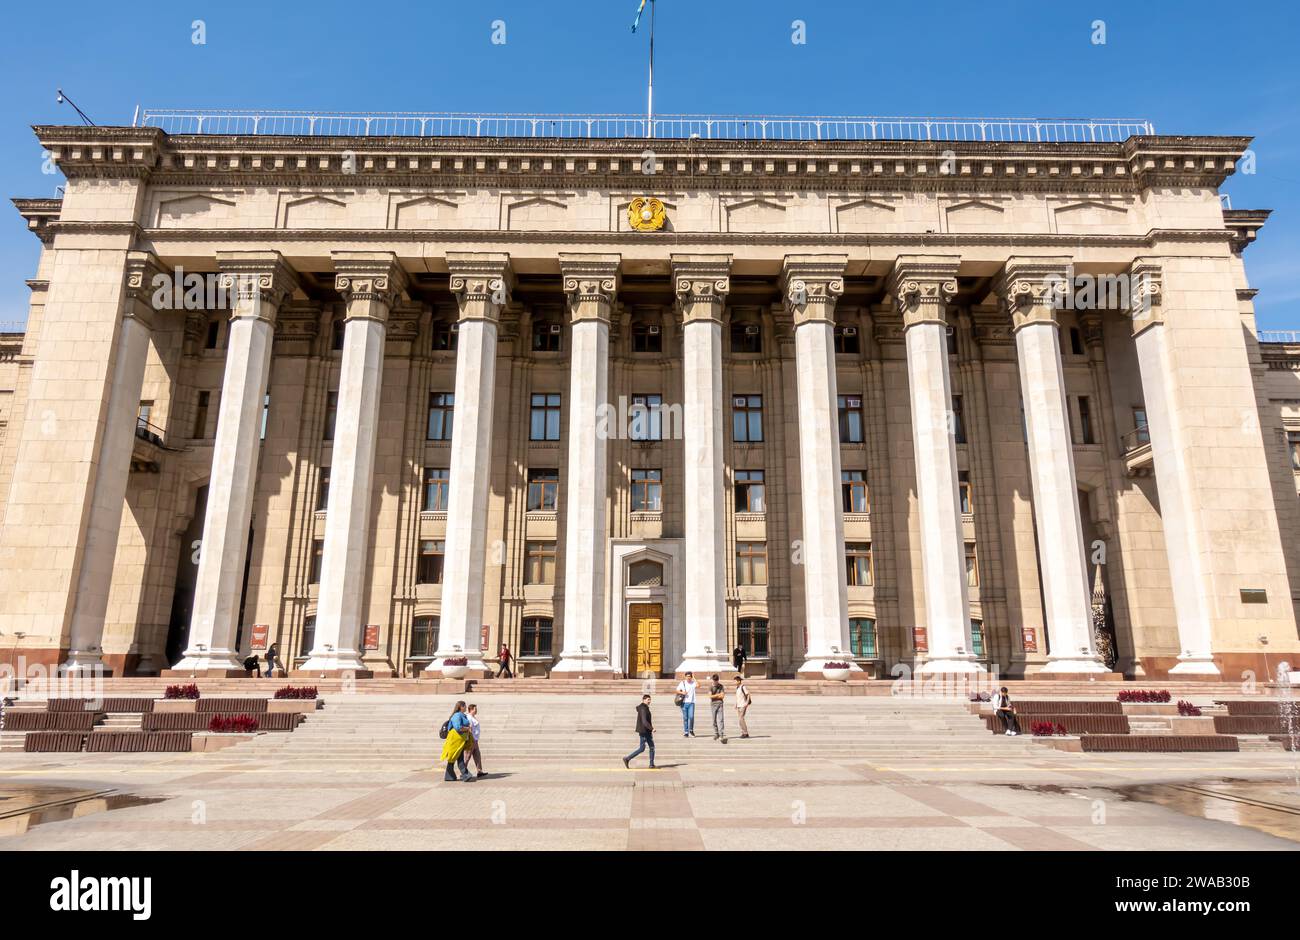 Die Kasachisch-britische Technische Universität ist eine Forschungs- und Bildungseinrichtung in Almaty, Kasachstan Stockfoto